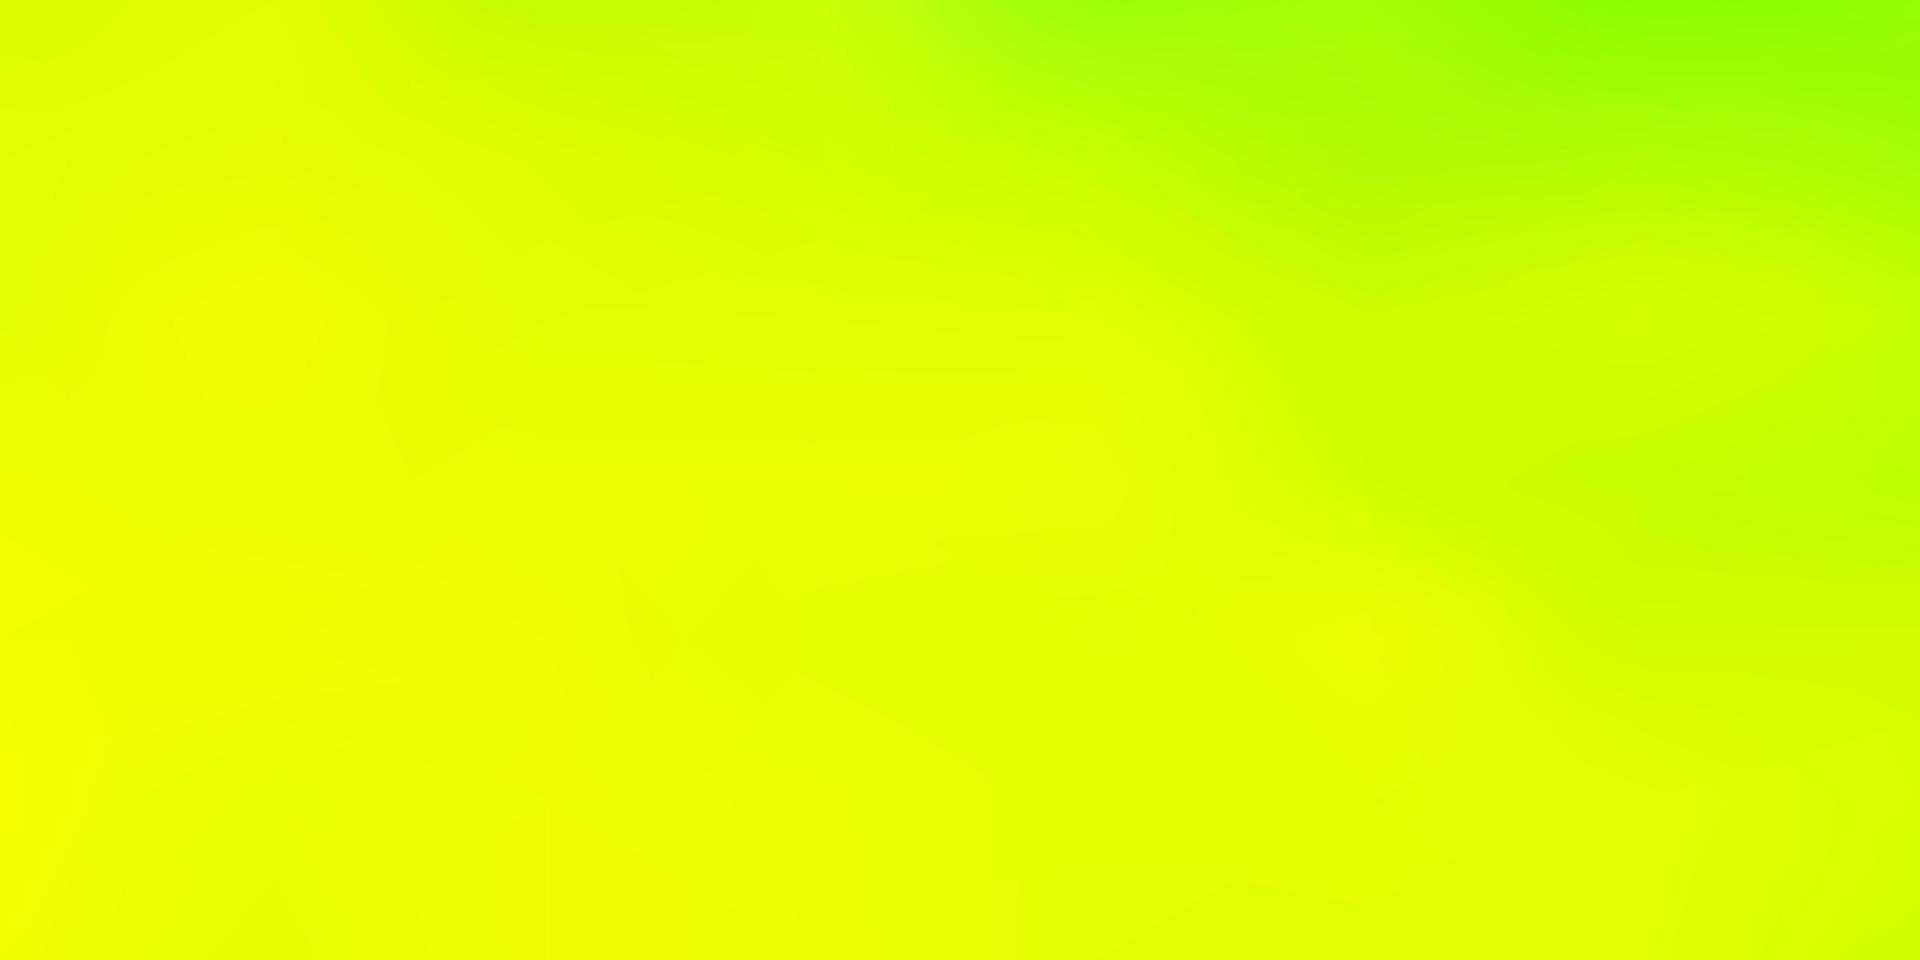 desenho de borrão de vetor verde e amarelo claro.